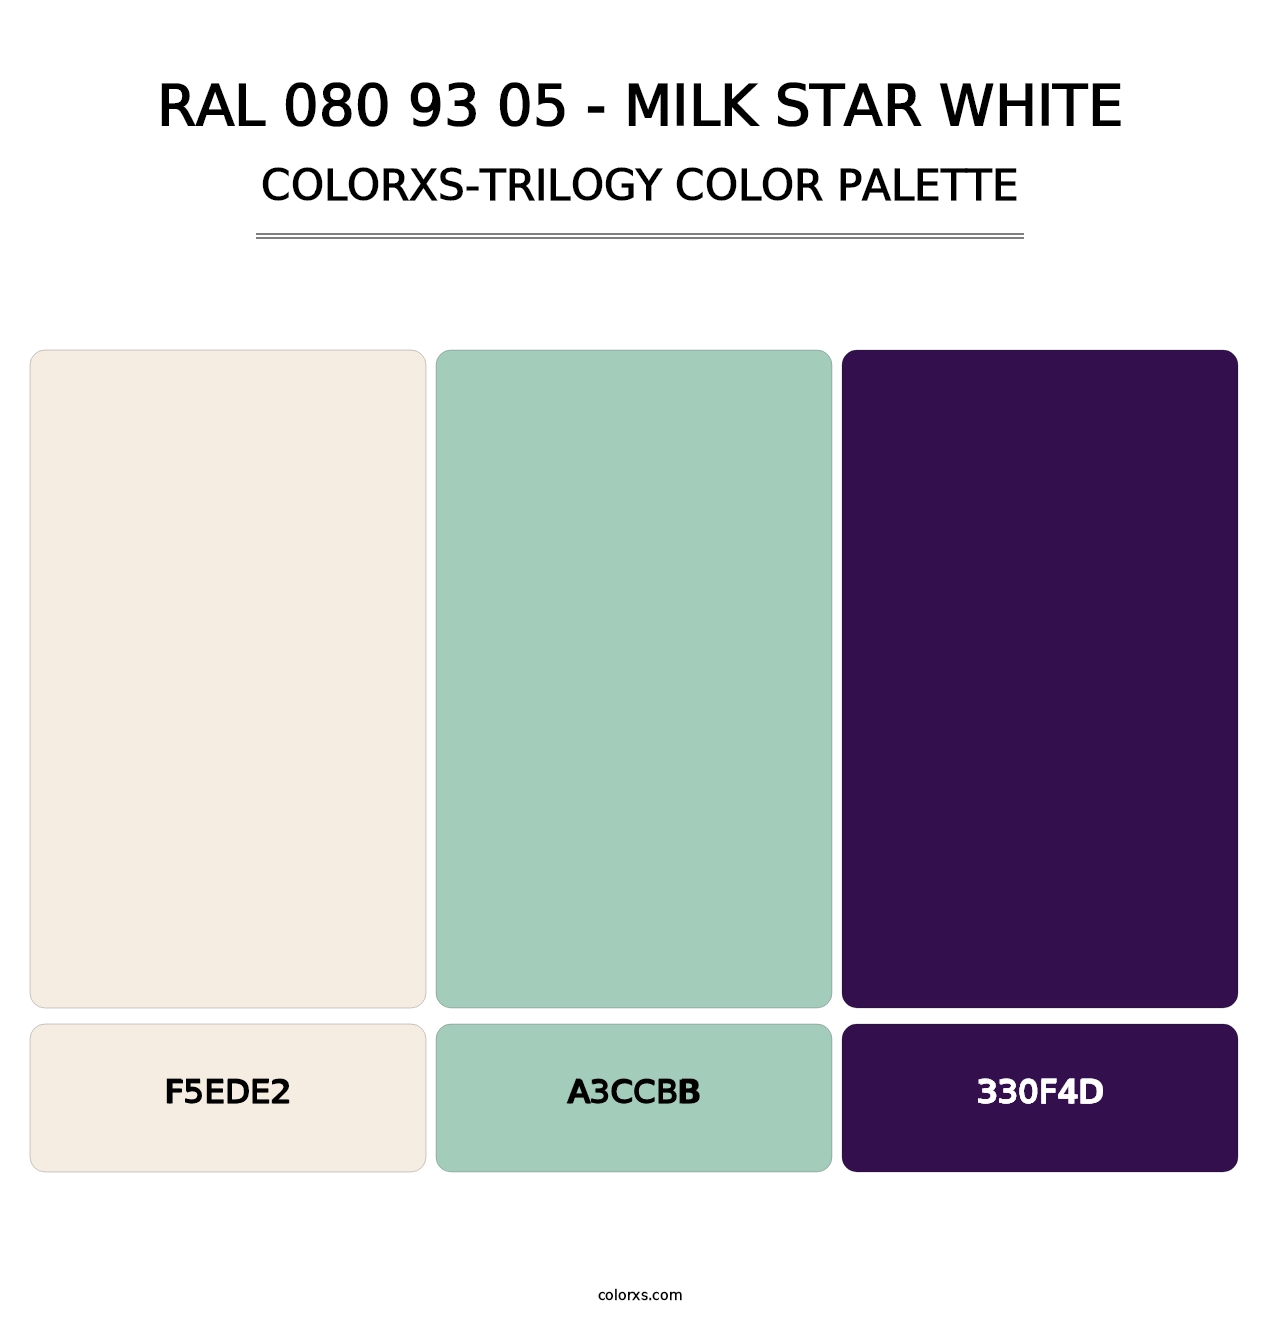 RAL 080 93 05 - Milk Star White - Colorxs Trilogy Palette